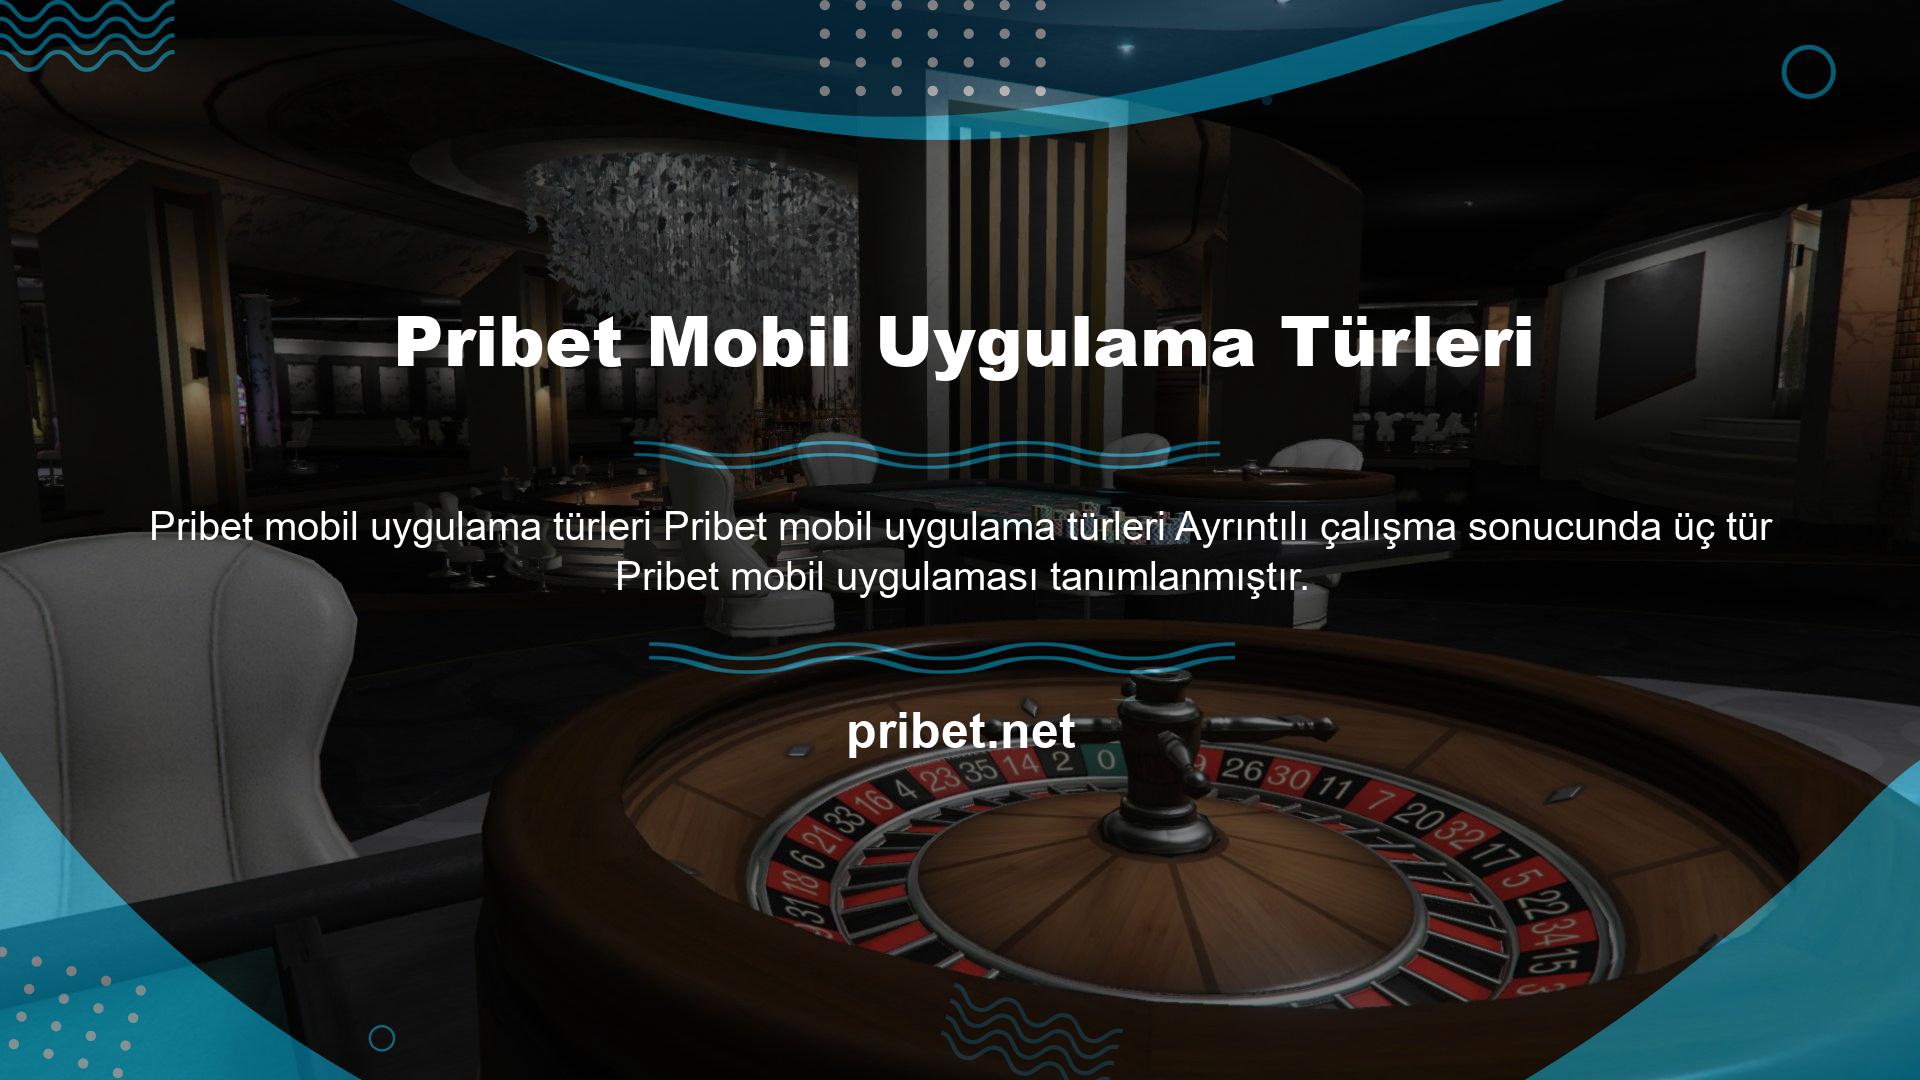 Pribet iPhone uygulaması, iOS telefon sahibi olmak isteyen kullanıcılara hitap edecek